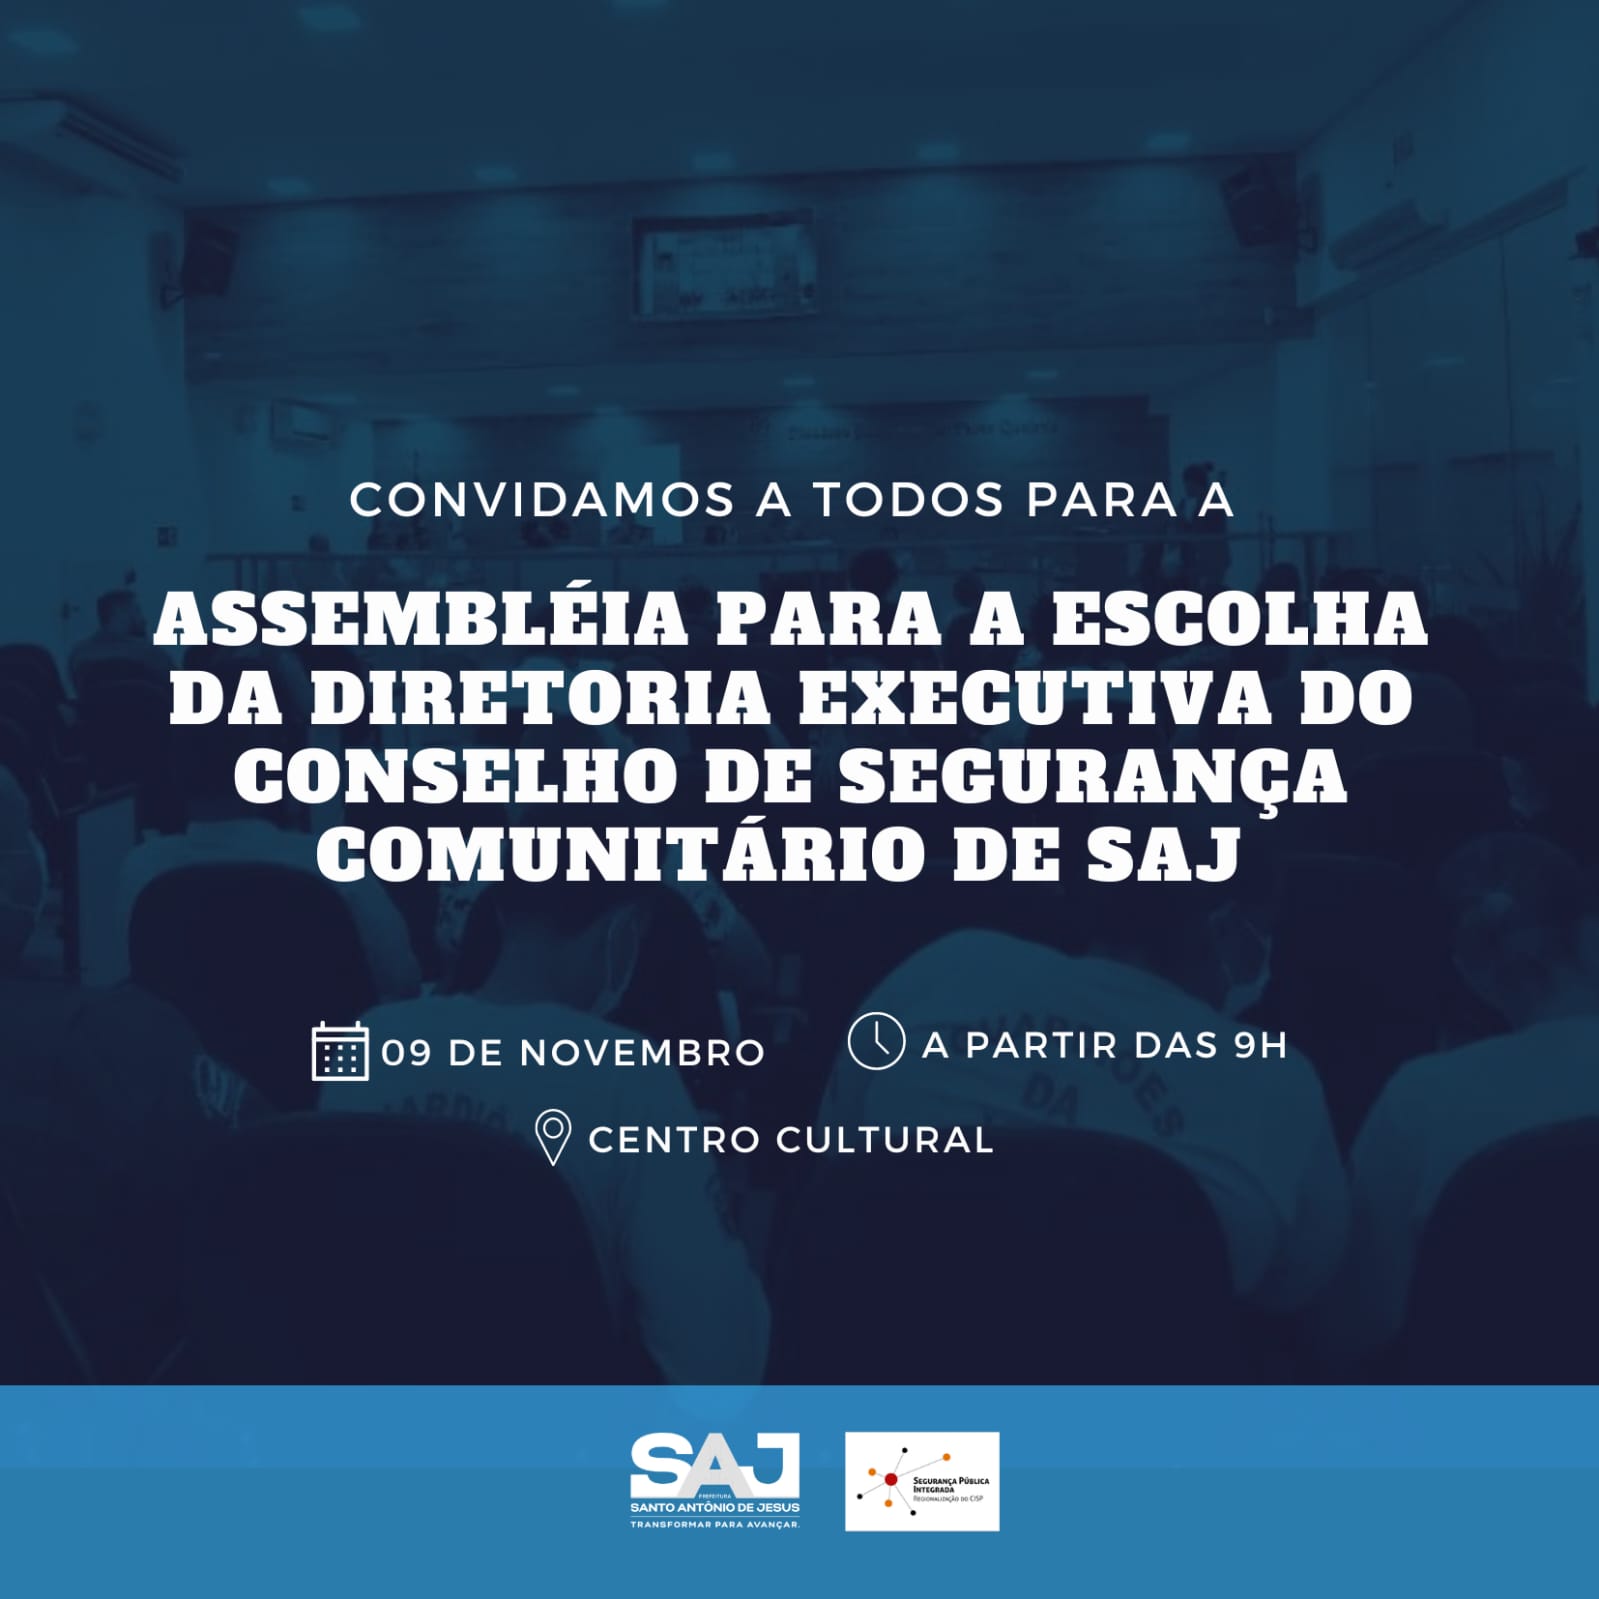 Prefeitura, em parceria com as polícias Militar e Civil da Bahia, convida população para assembleia de formação de Conselho de Segurança